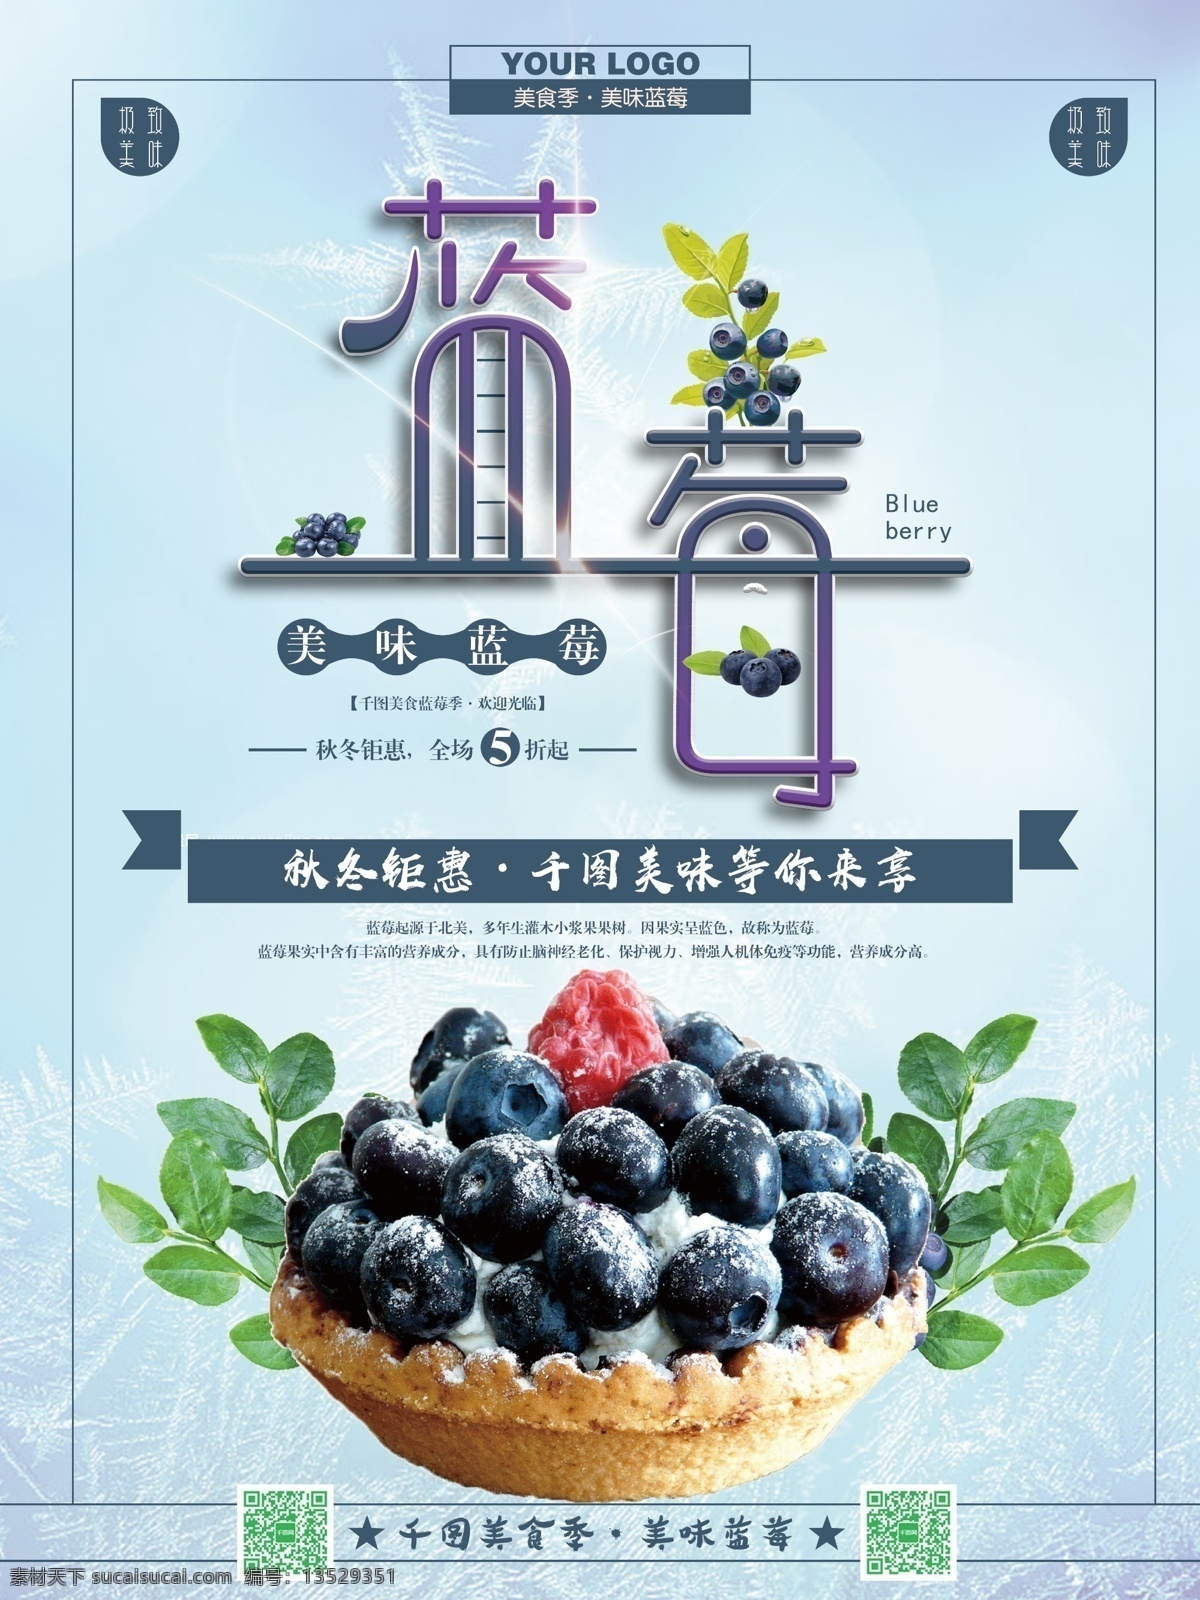 简约 大气 美味 蓝莓 宣传海报 模板 健康 蓝莓海报 蓝色 绿色 绿色水果 软润 时尚 水果 水果促销 水果海报 水果上新